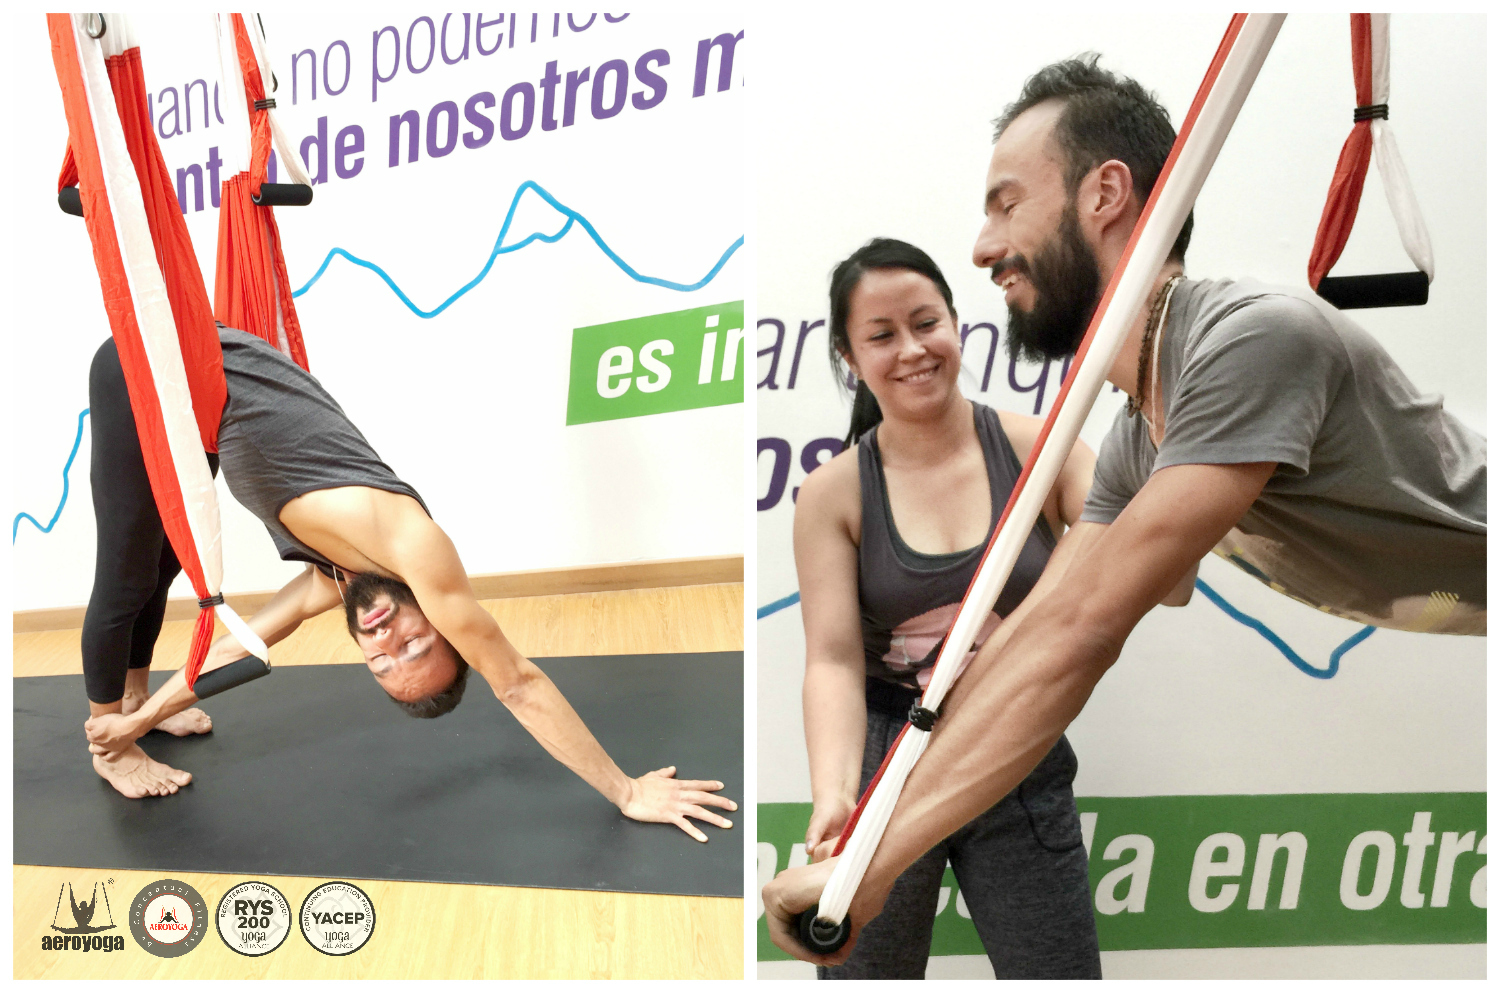 Súmate a la Formación en Yoga Aéreo by AeroYoga® International en Colombia, Acreditada Yoga Alliance